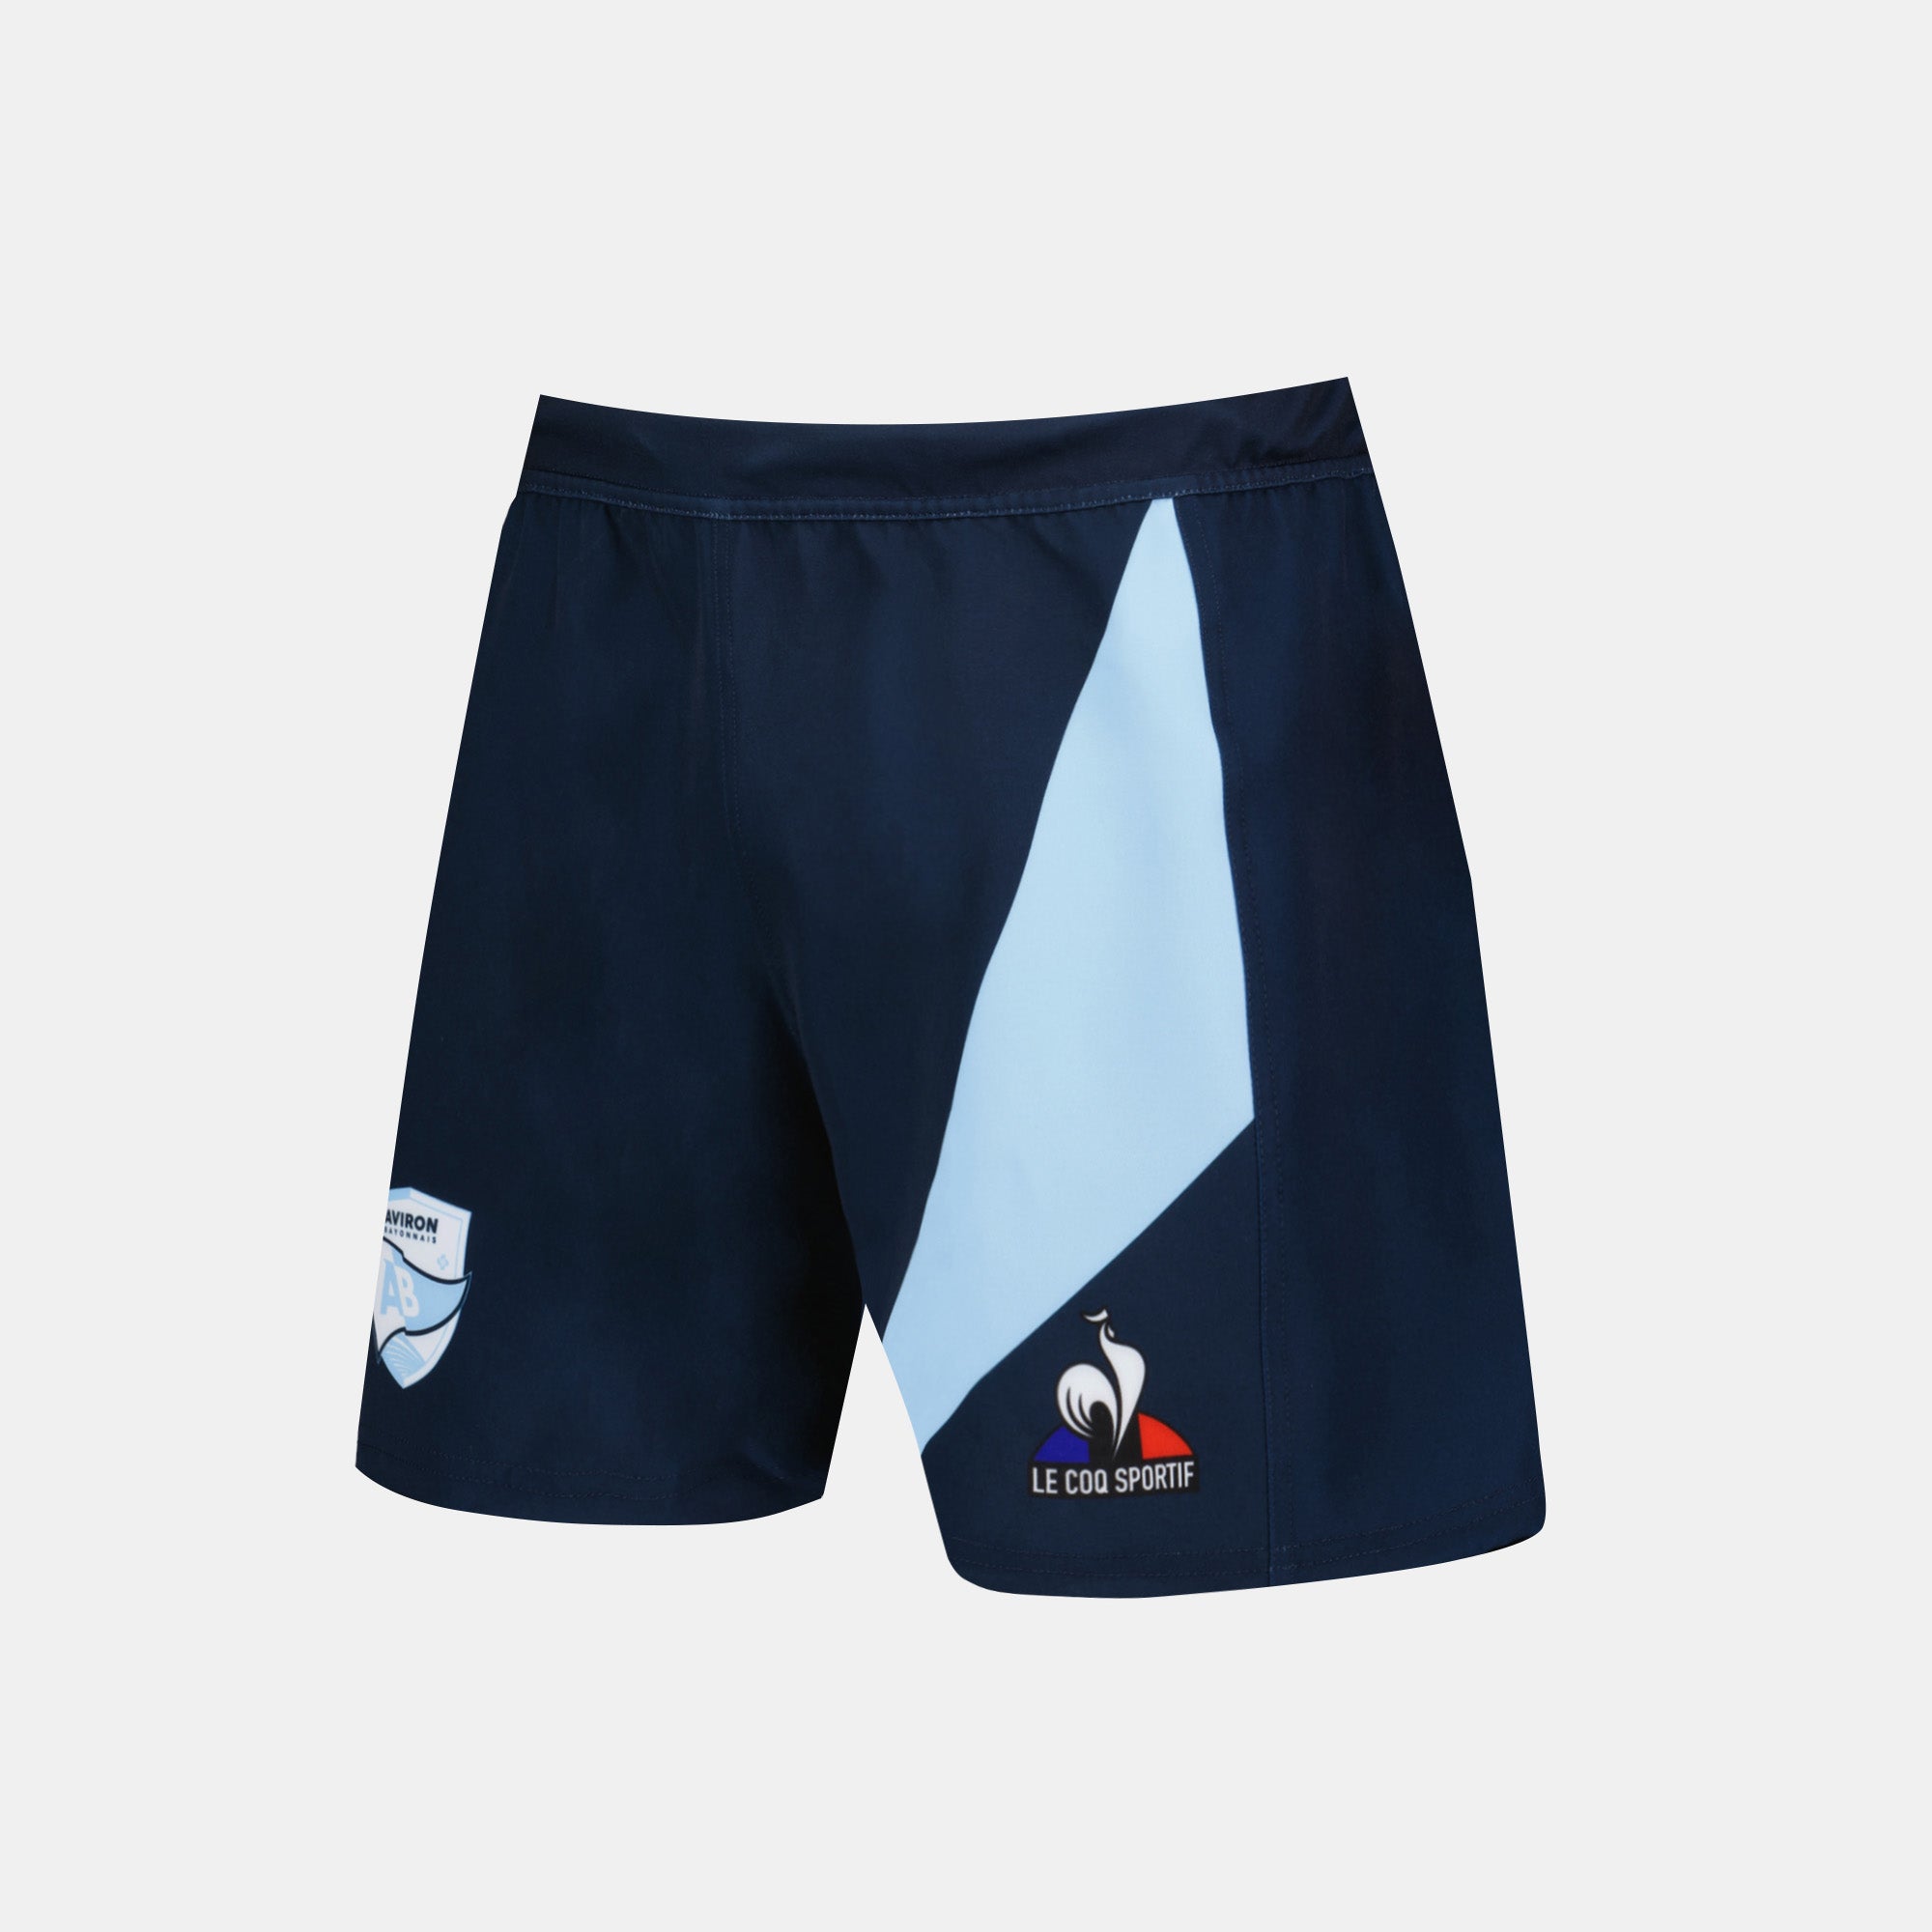 2320316-AB SHORT Rugby M blue navy/fly blue  | Shorts für Herren